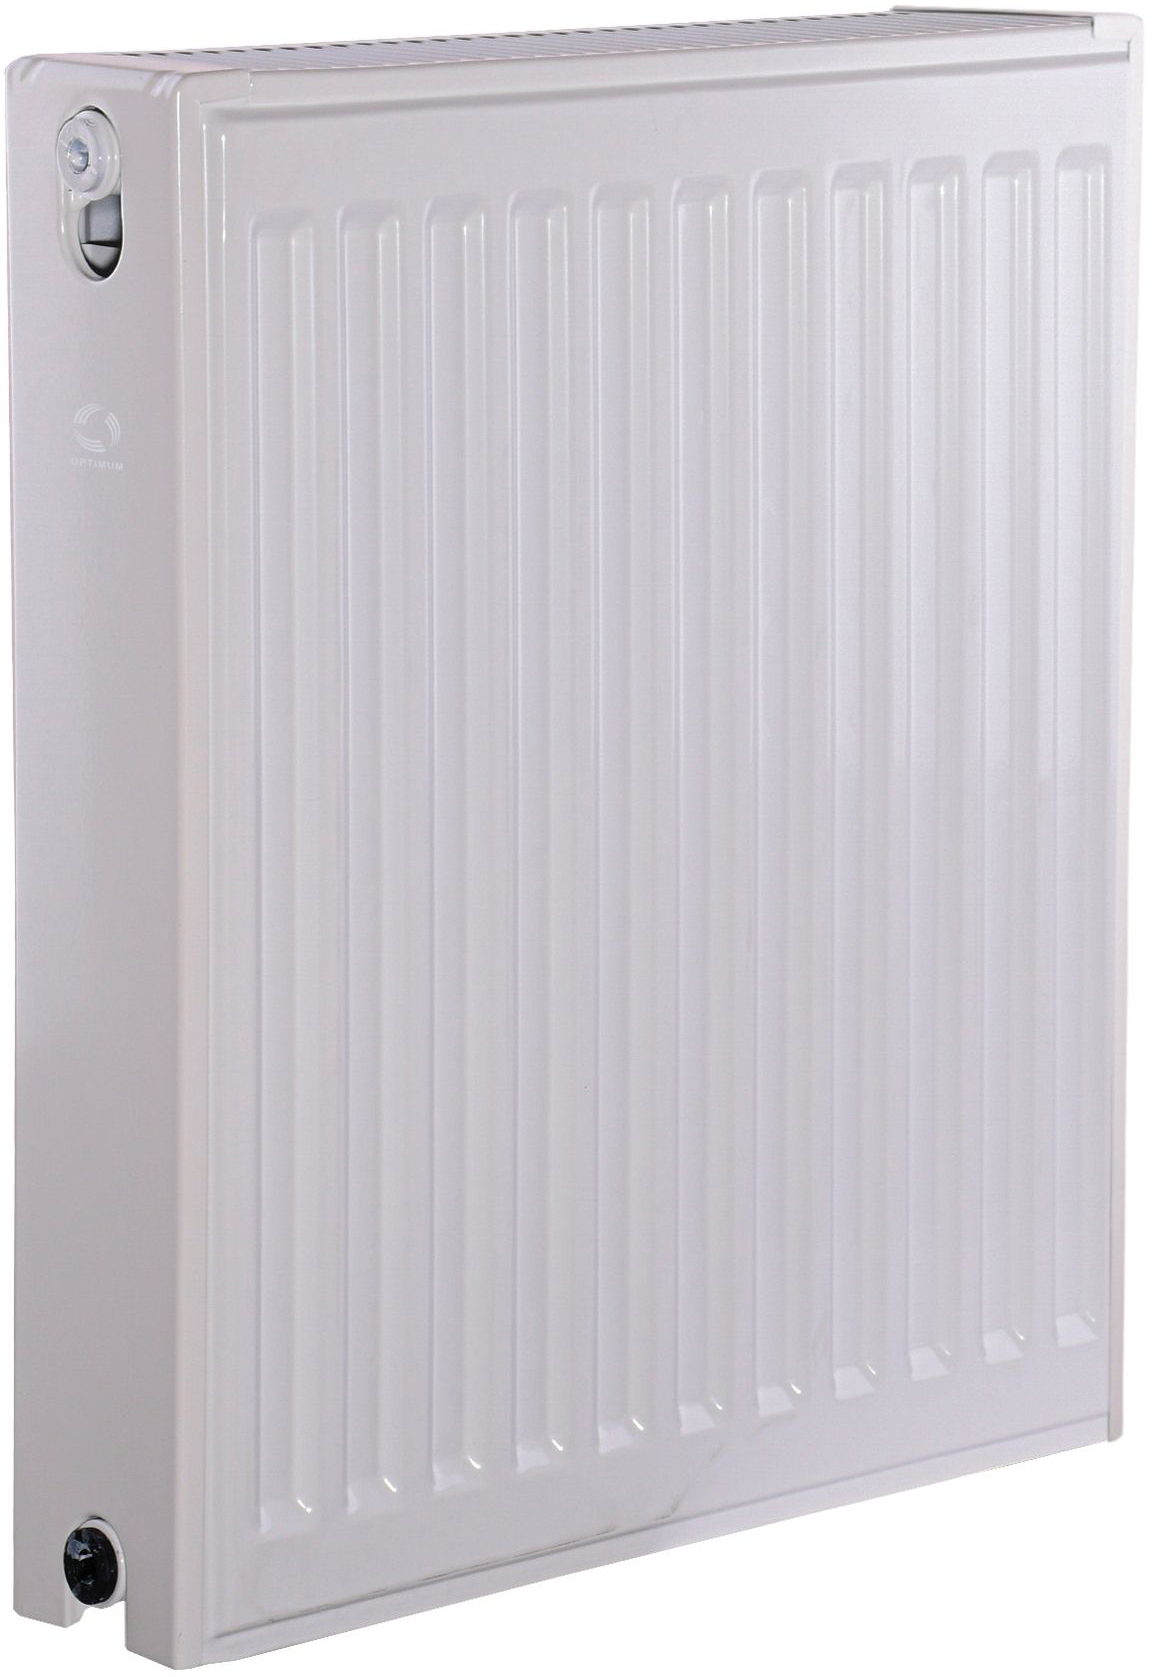 Цена радиатор для отопления Optimum 22 бок 500x400 в Херсоне